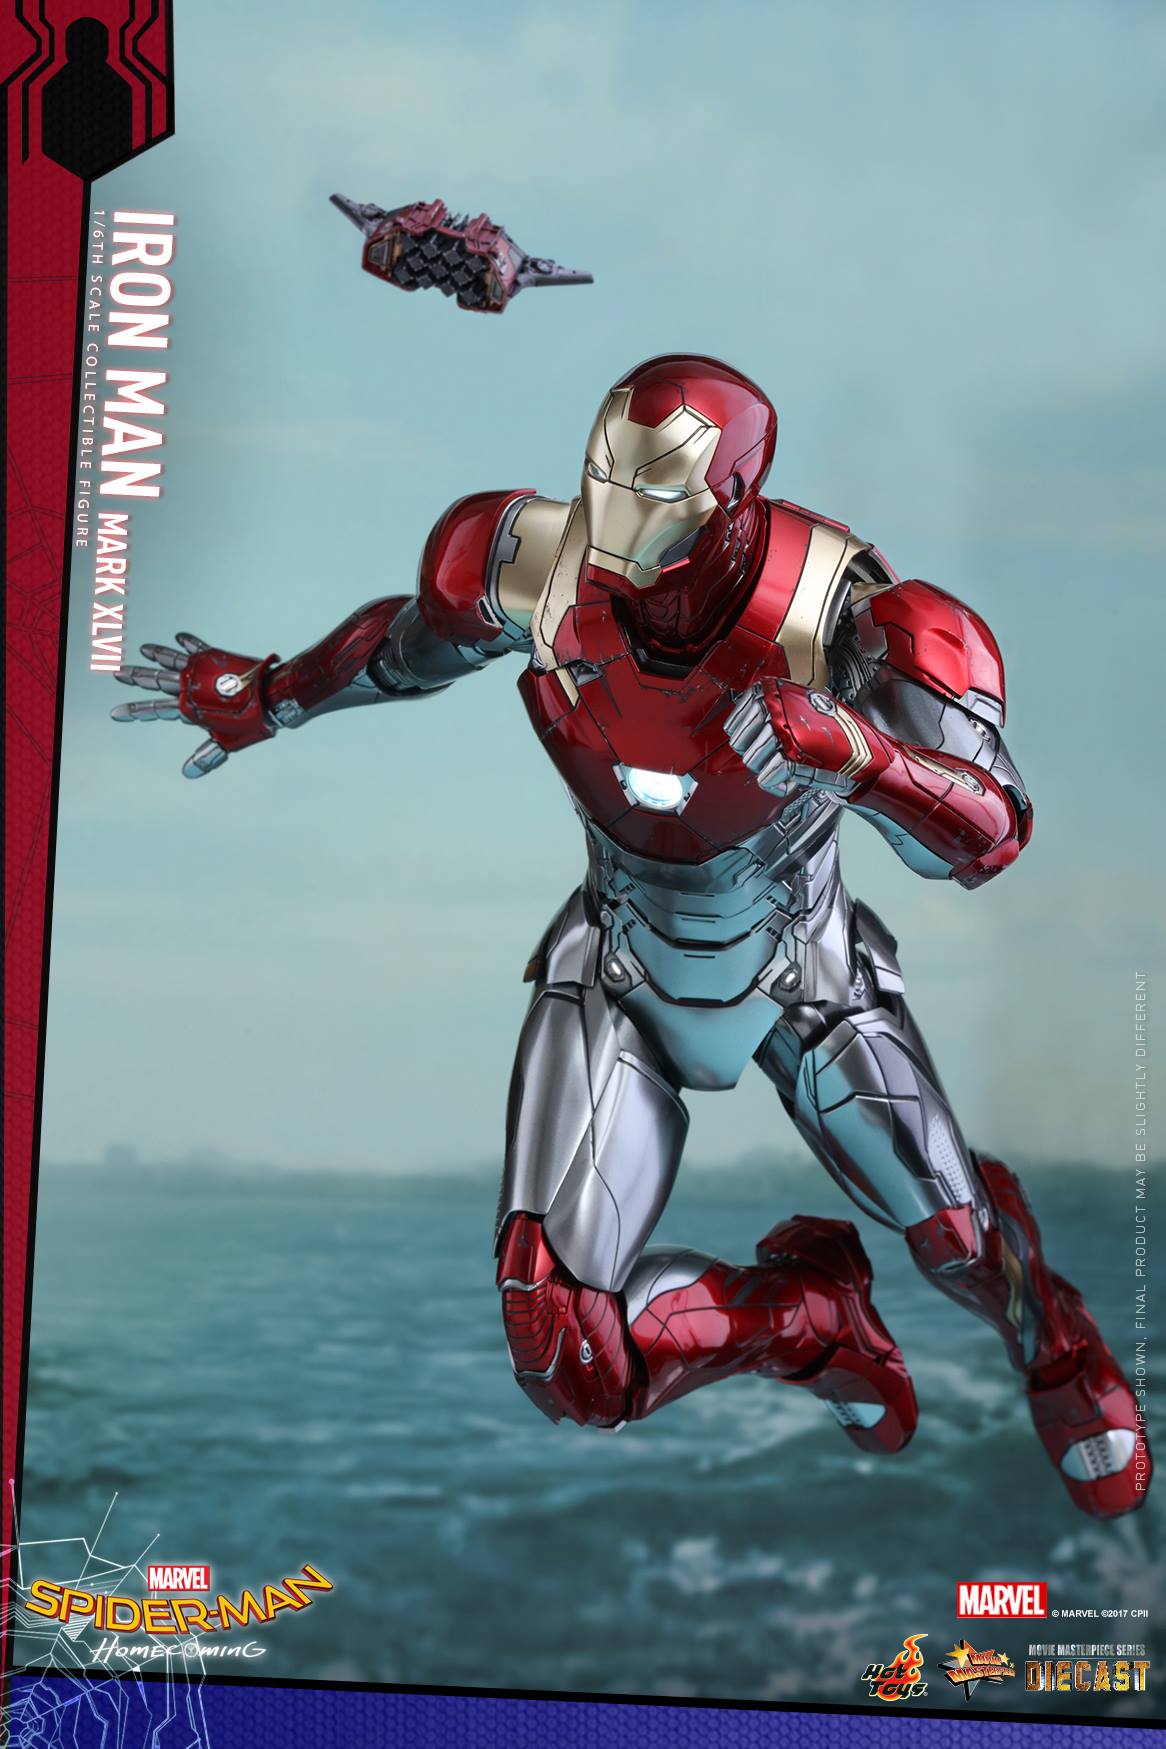 Hot-Toys-Iron-Man-Mark-XLVII-Figure-003.jpg